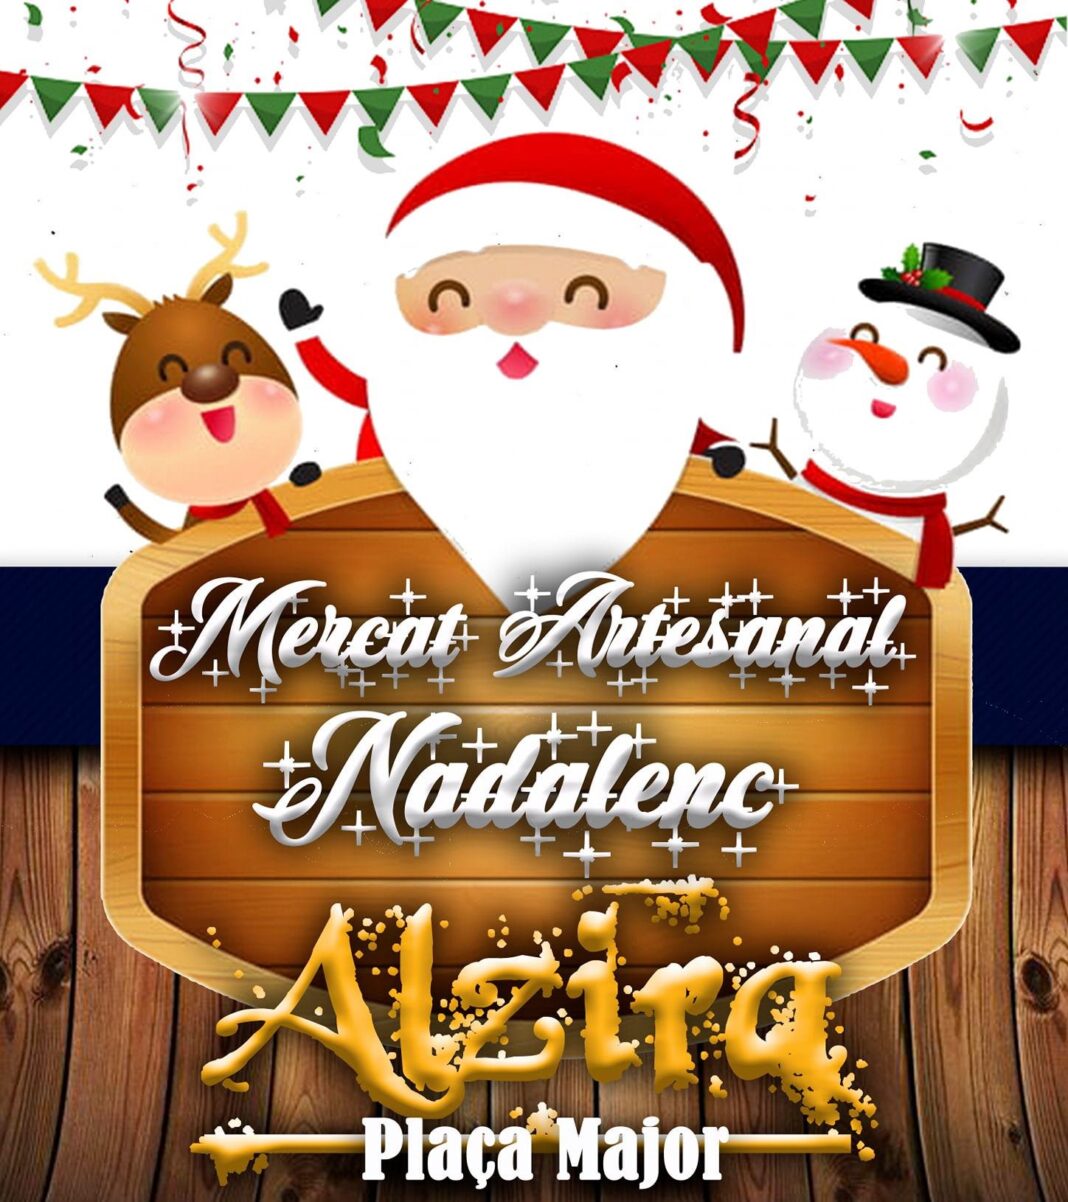 El Mercado de Navidad vuelve a la Plaza Mayor de Alzira